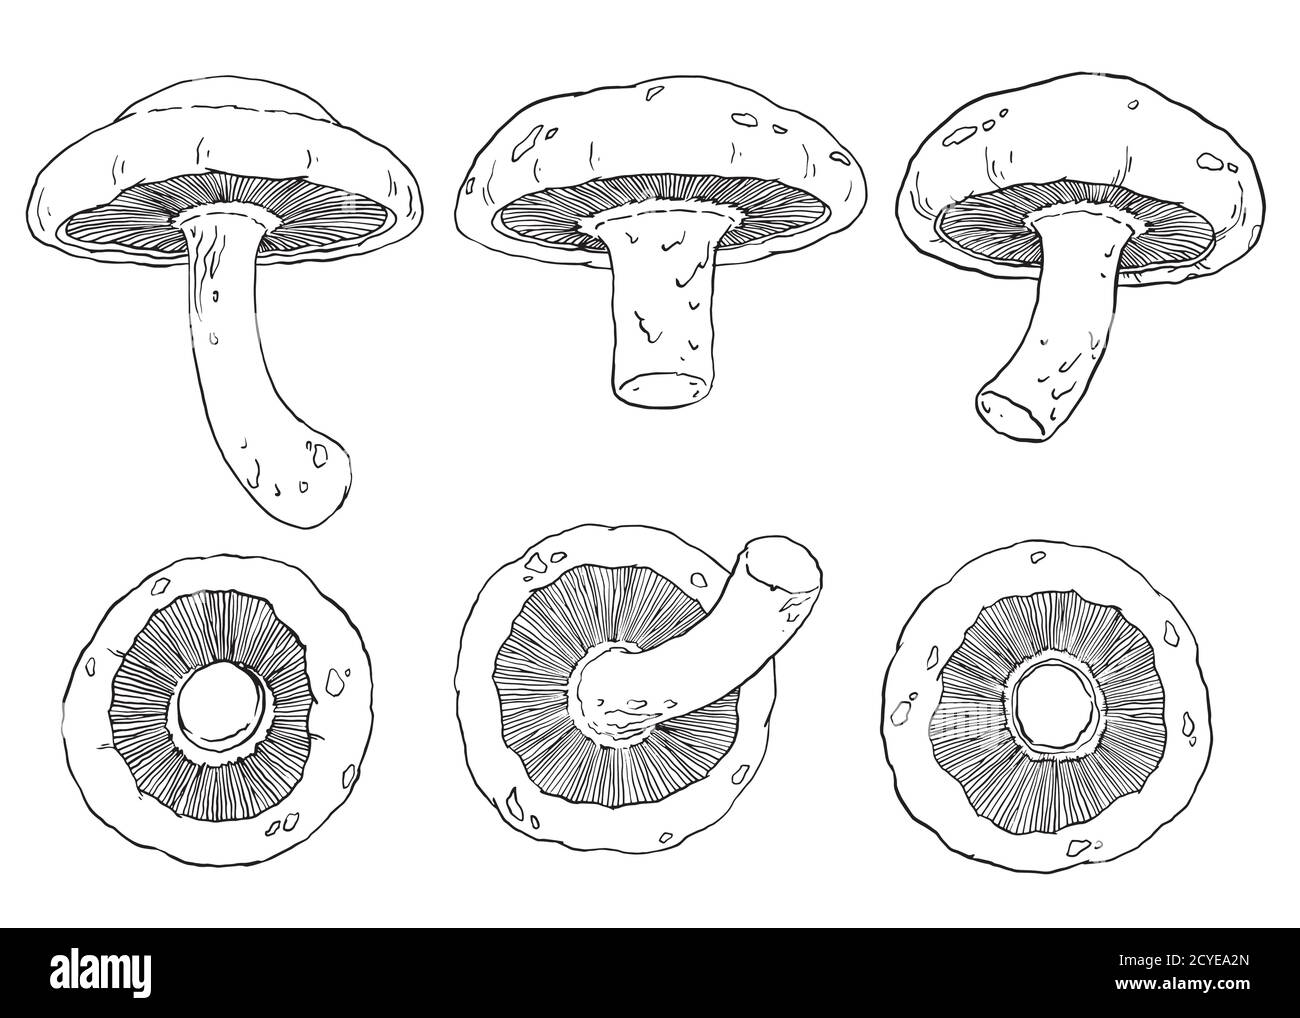 Illustrazione dei funghi shiitake. Set di 6 funghi disegnati a mano. Disegno dettagliato in bianco e nero. Illustrazione vettoriale. Illustrazione Vettoriale